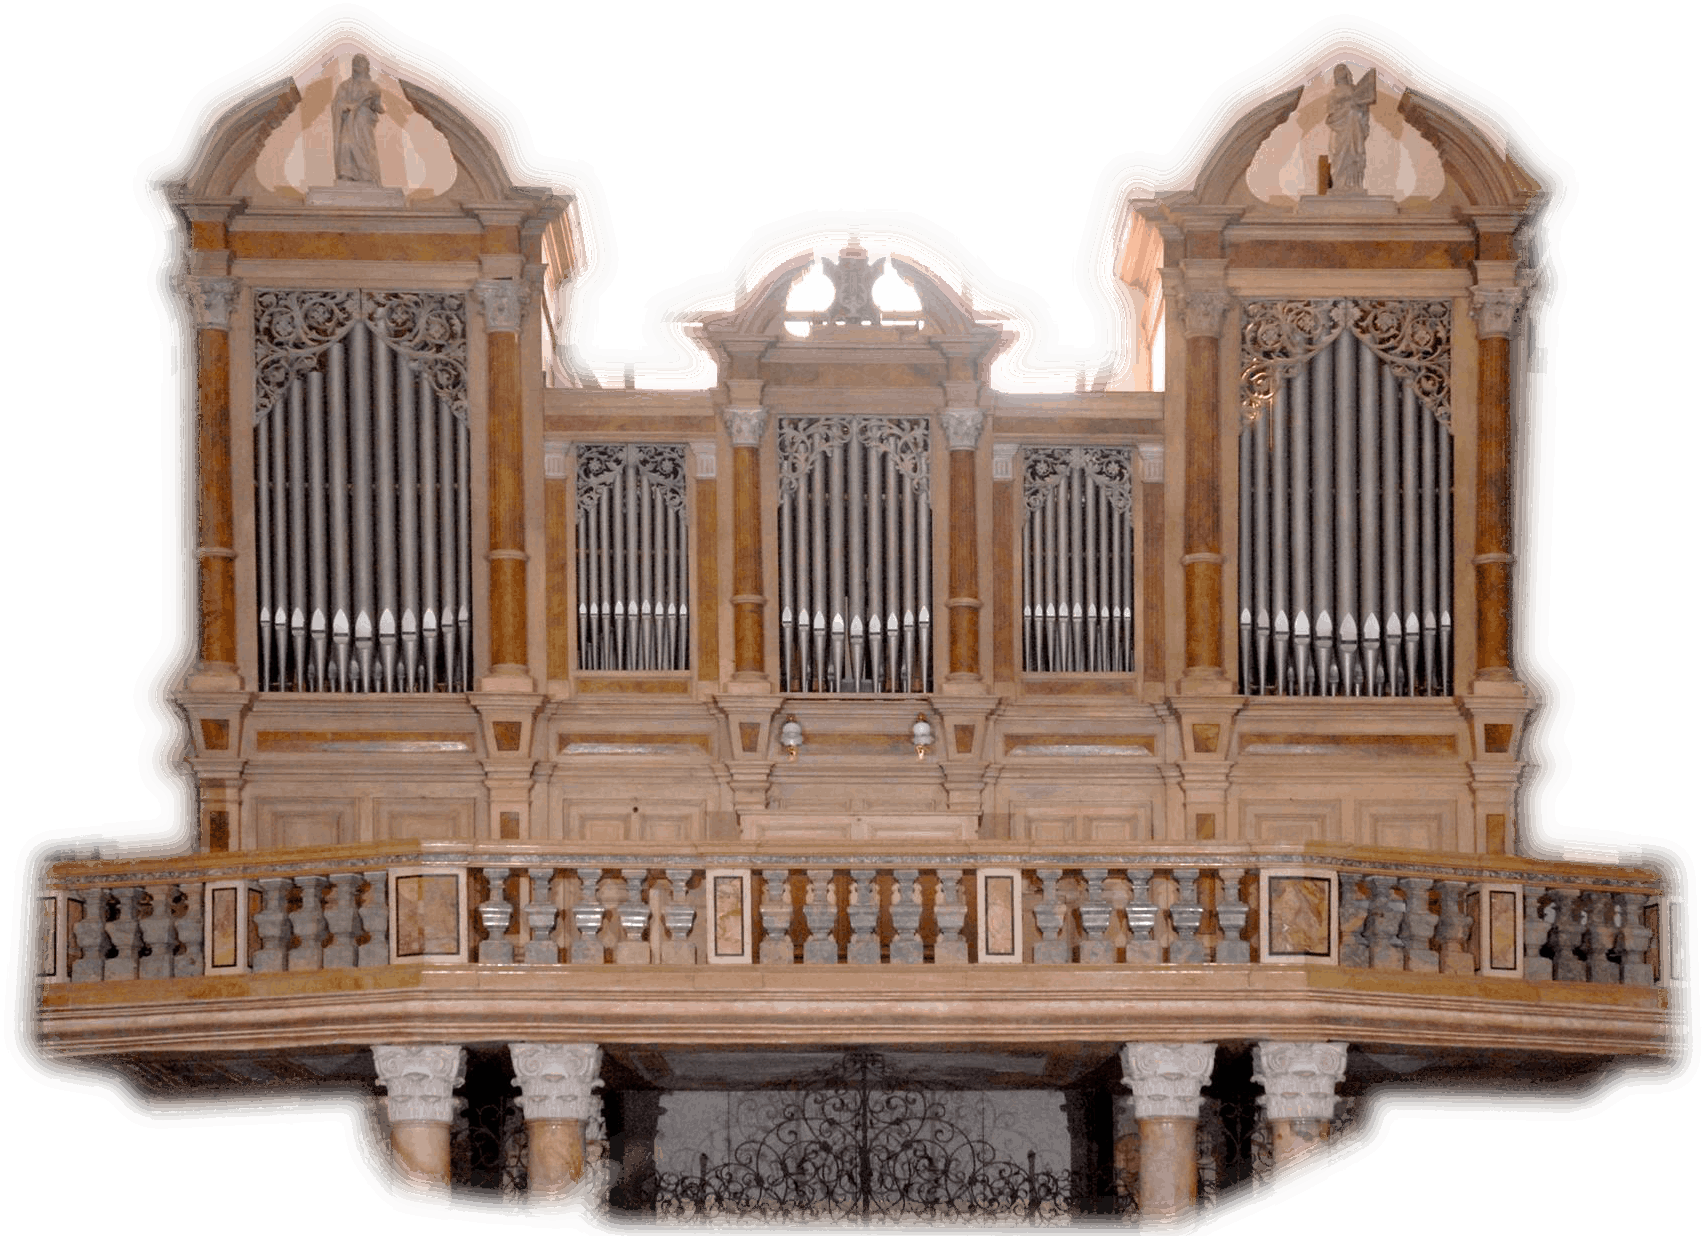 Organo Geb. Mayer 1888, photo credits: Maurizio Isabella